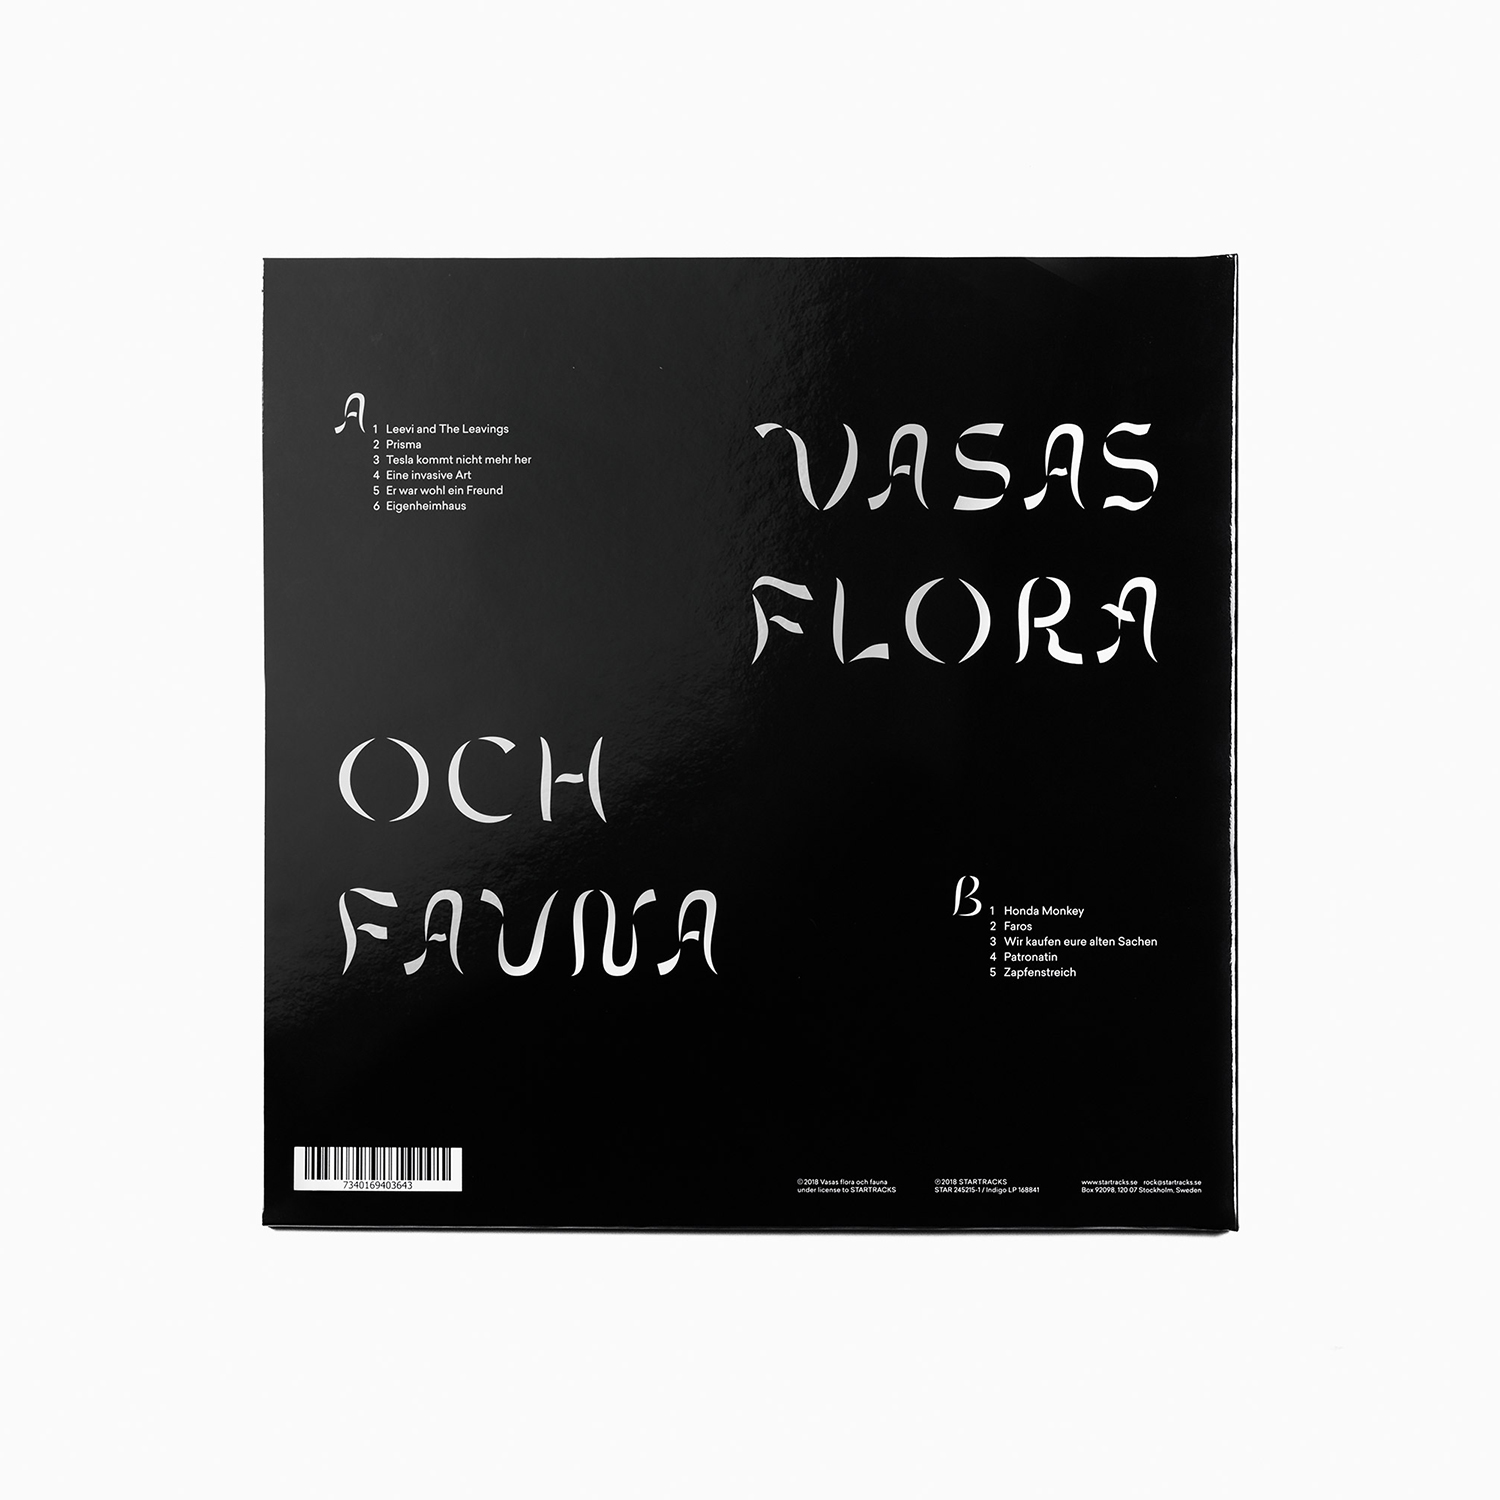 LP and CD packaging design by Bedow for Vasas Flora Och Fauna's album Strandgut